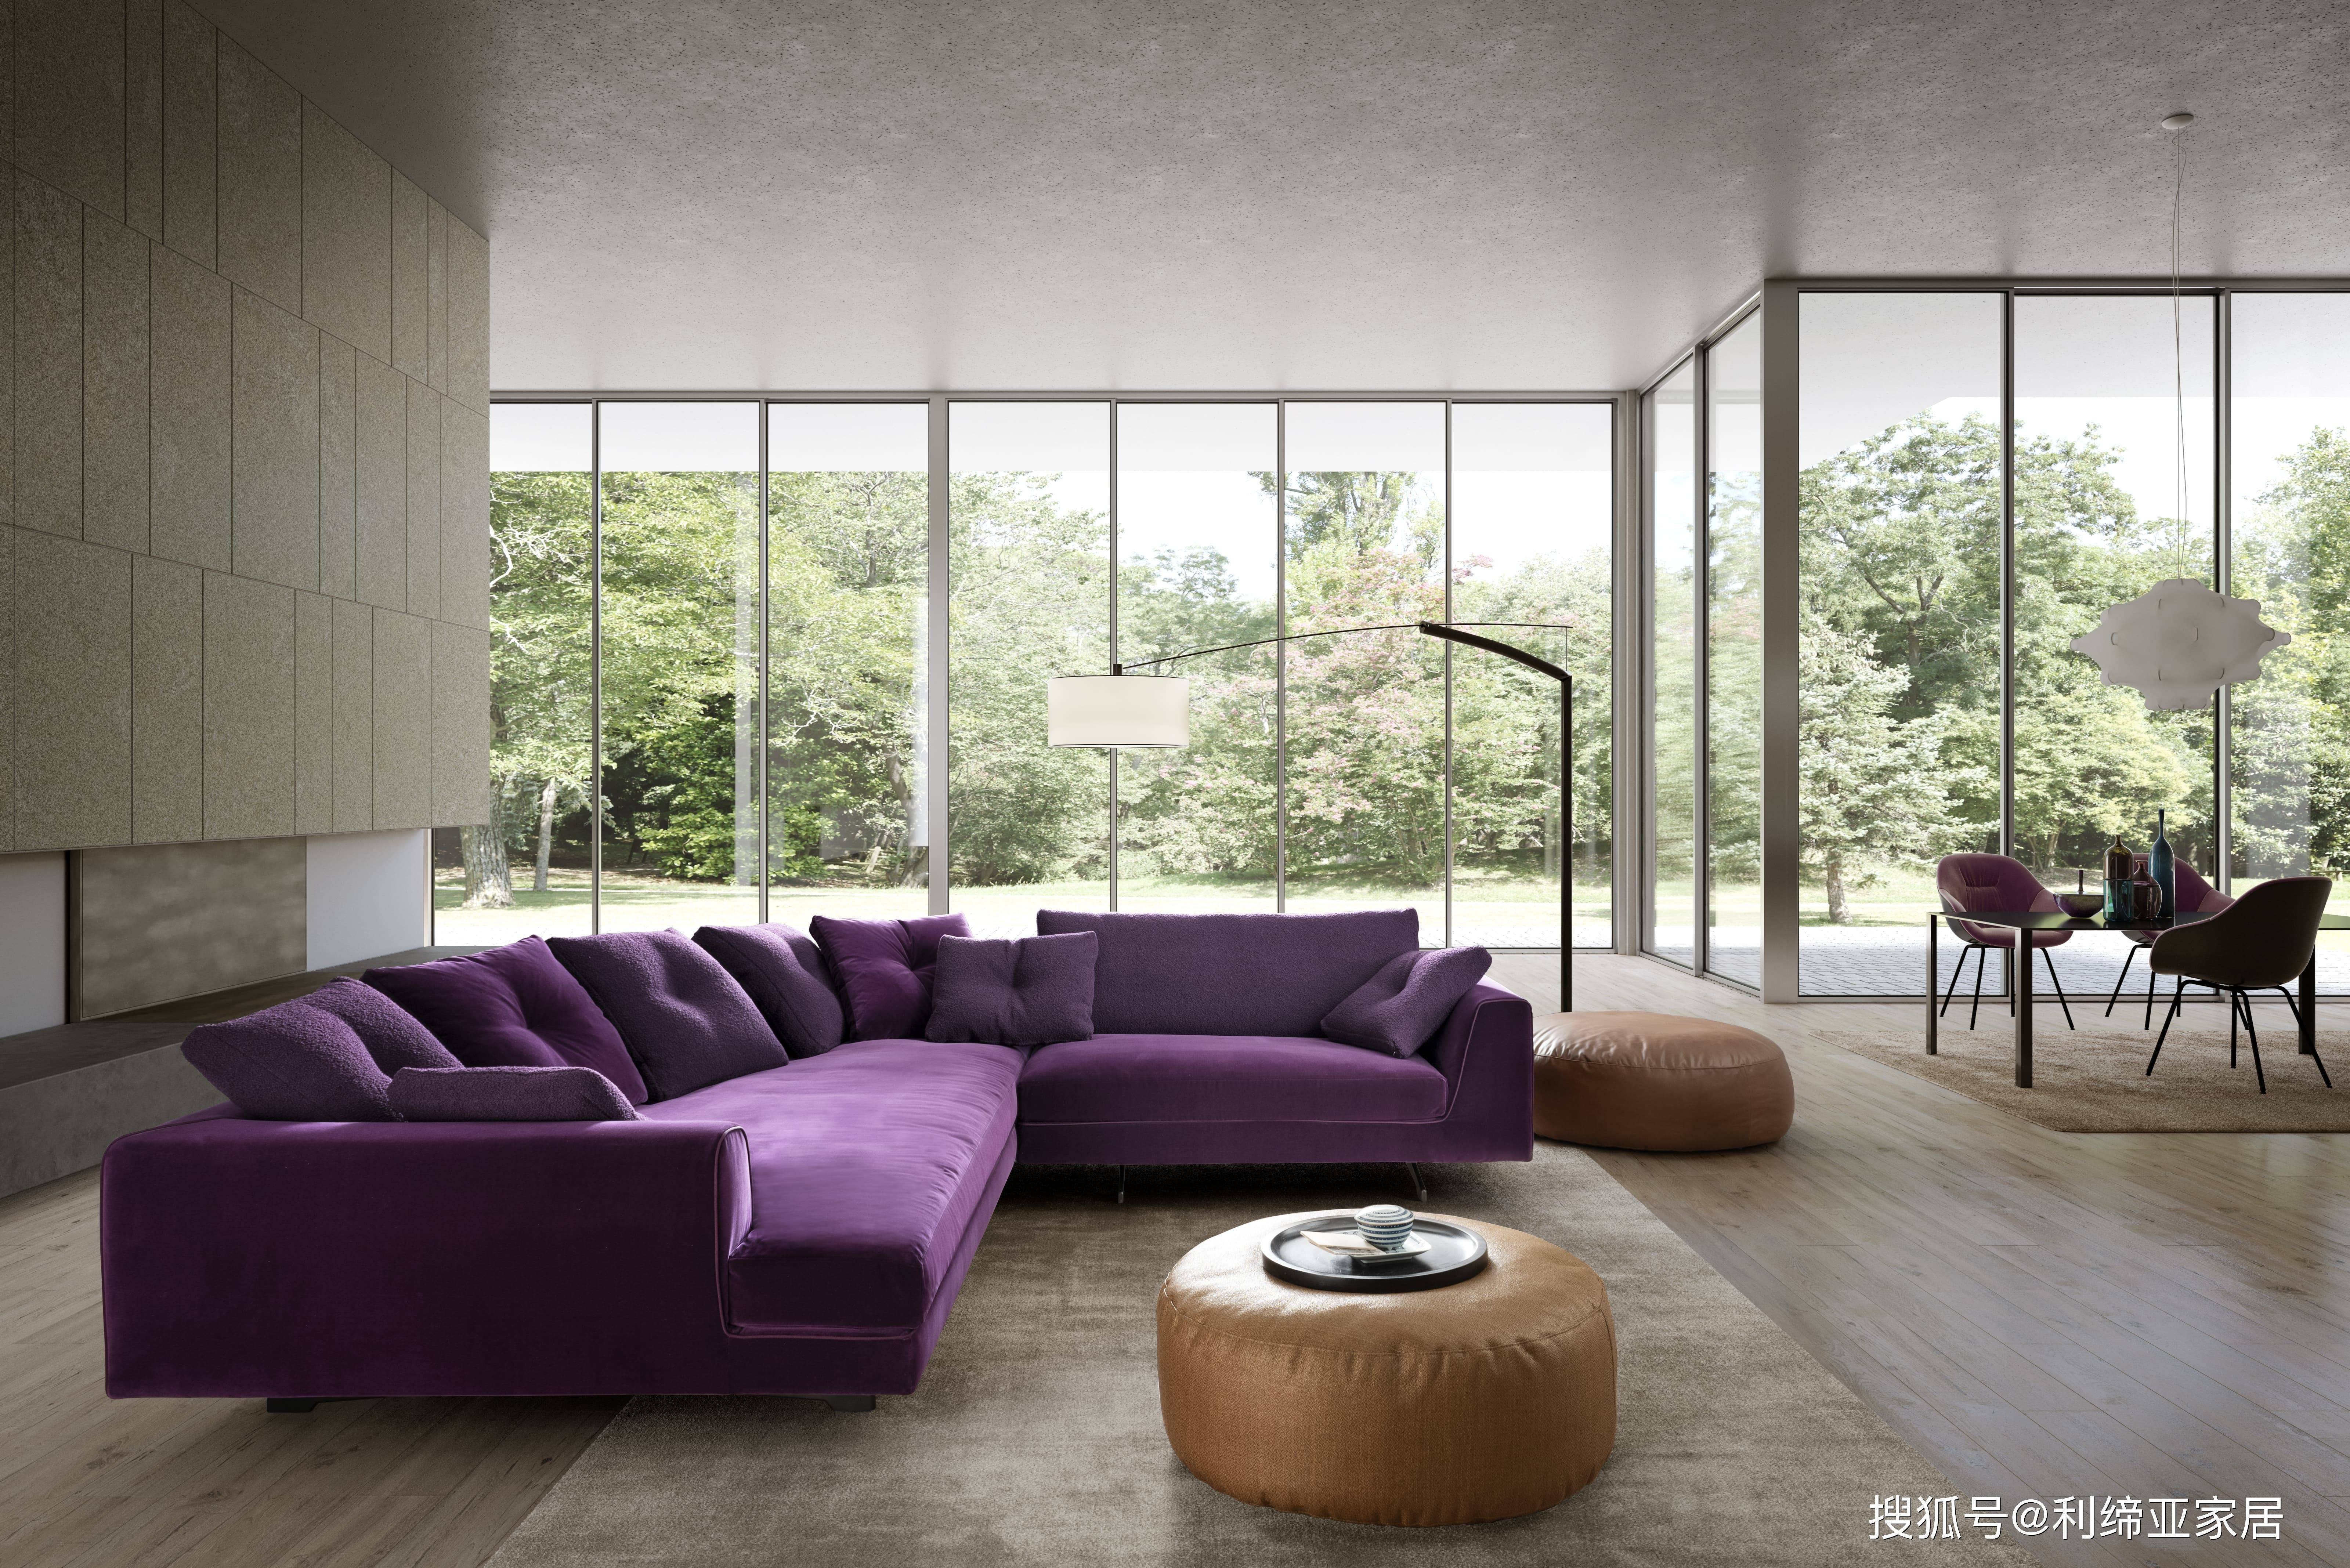 推荐一款意大利进口高级沙发,意大利顶级家居品牌valentini家具的